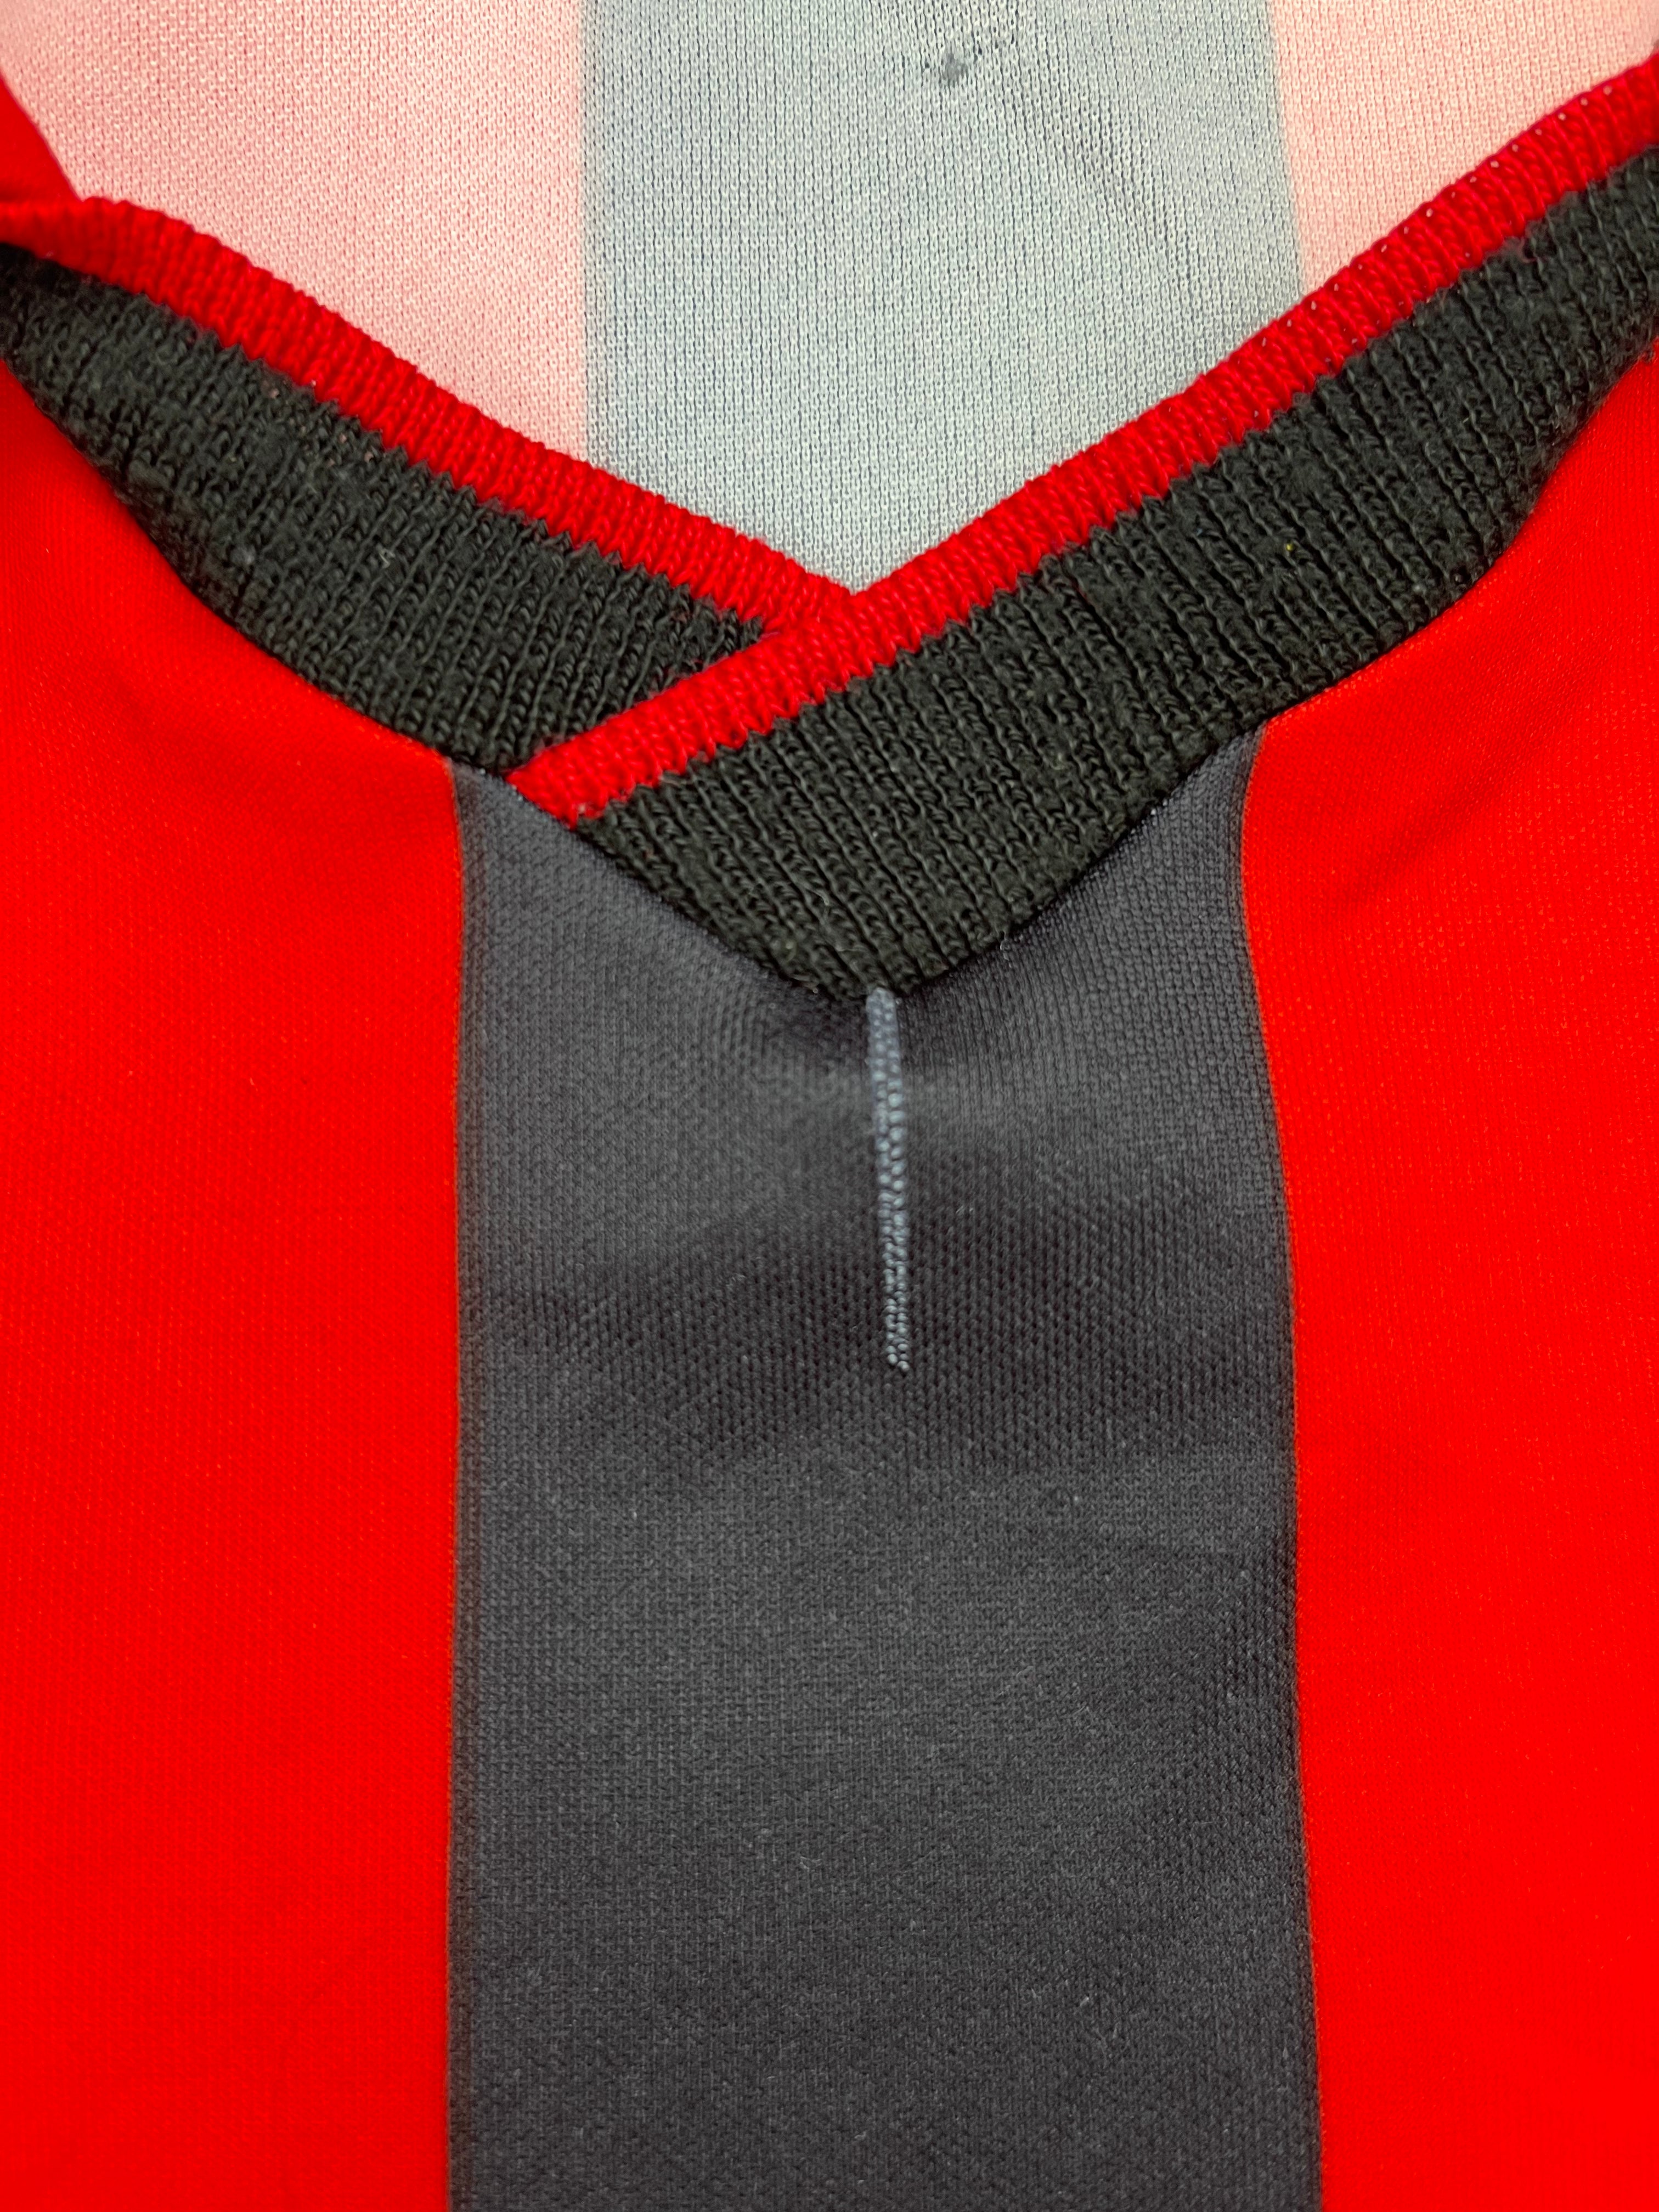 1990/91 Camiseta local del AC Milan L/S (M) 8/10